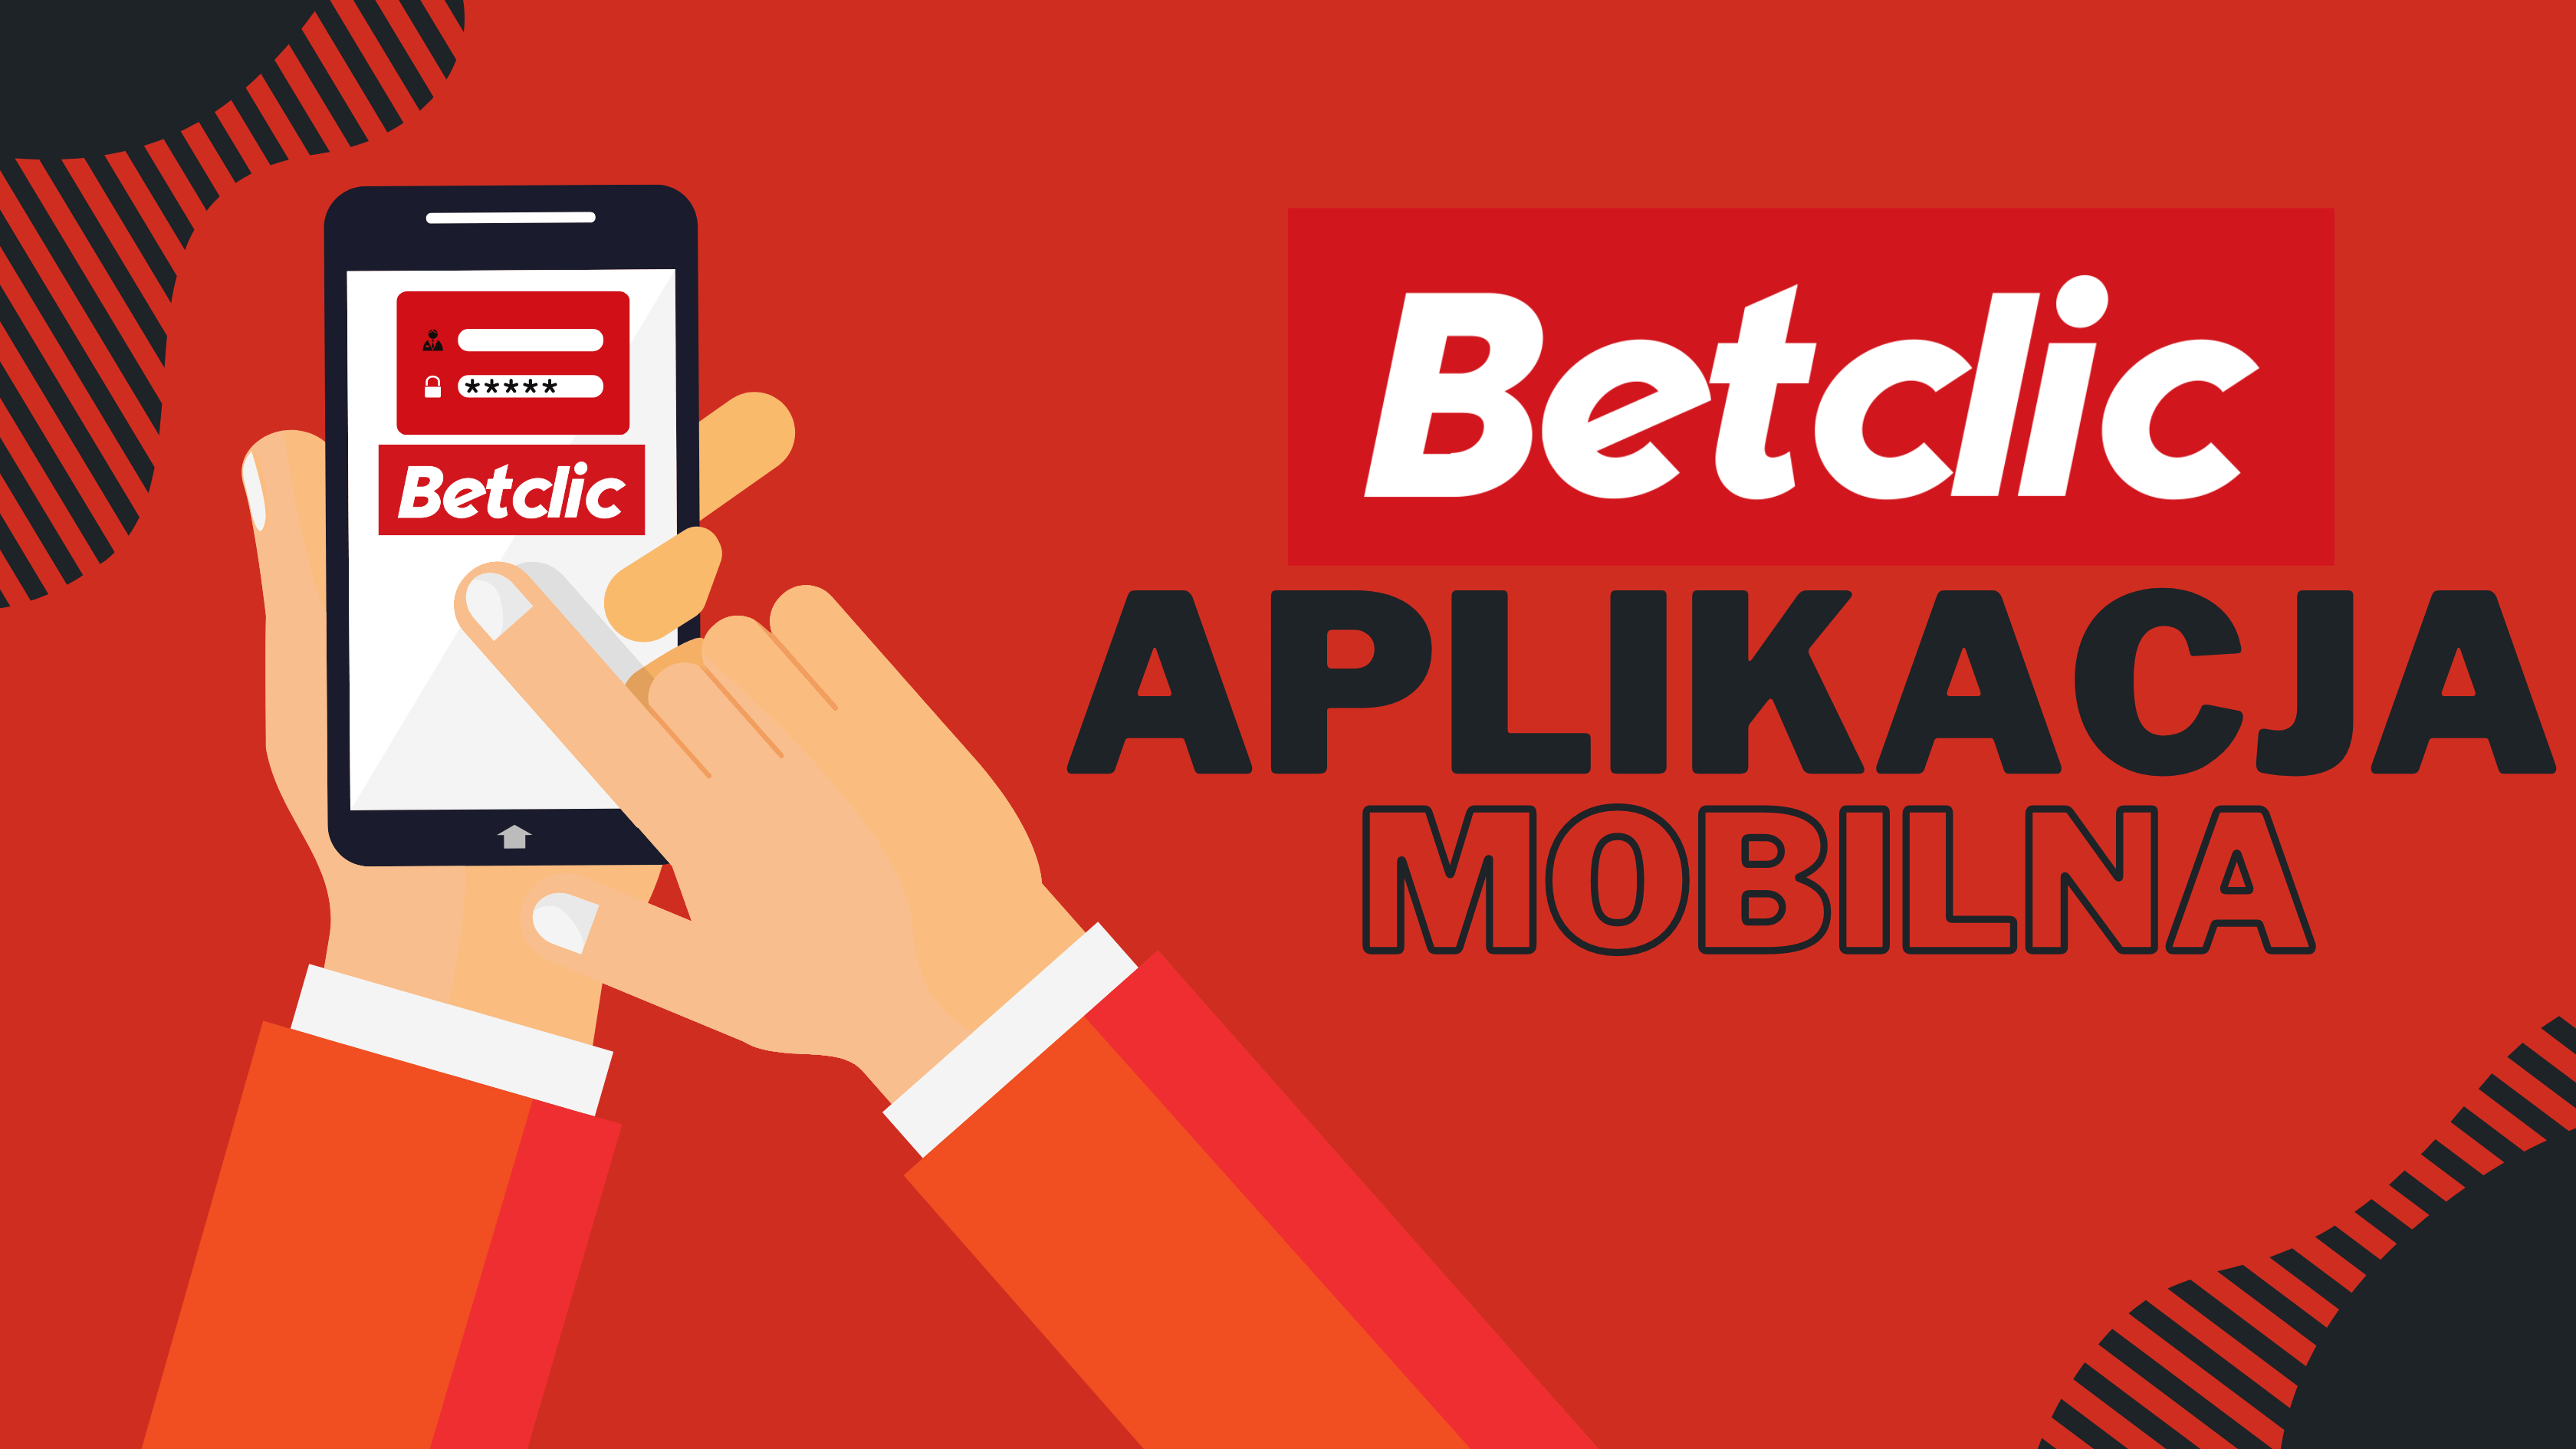 Betclic aplikacja mobilna na Android i iOS